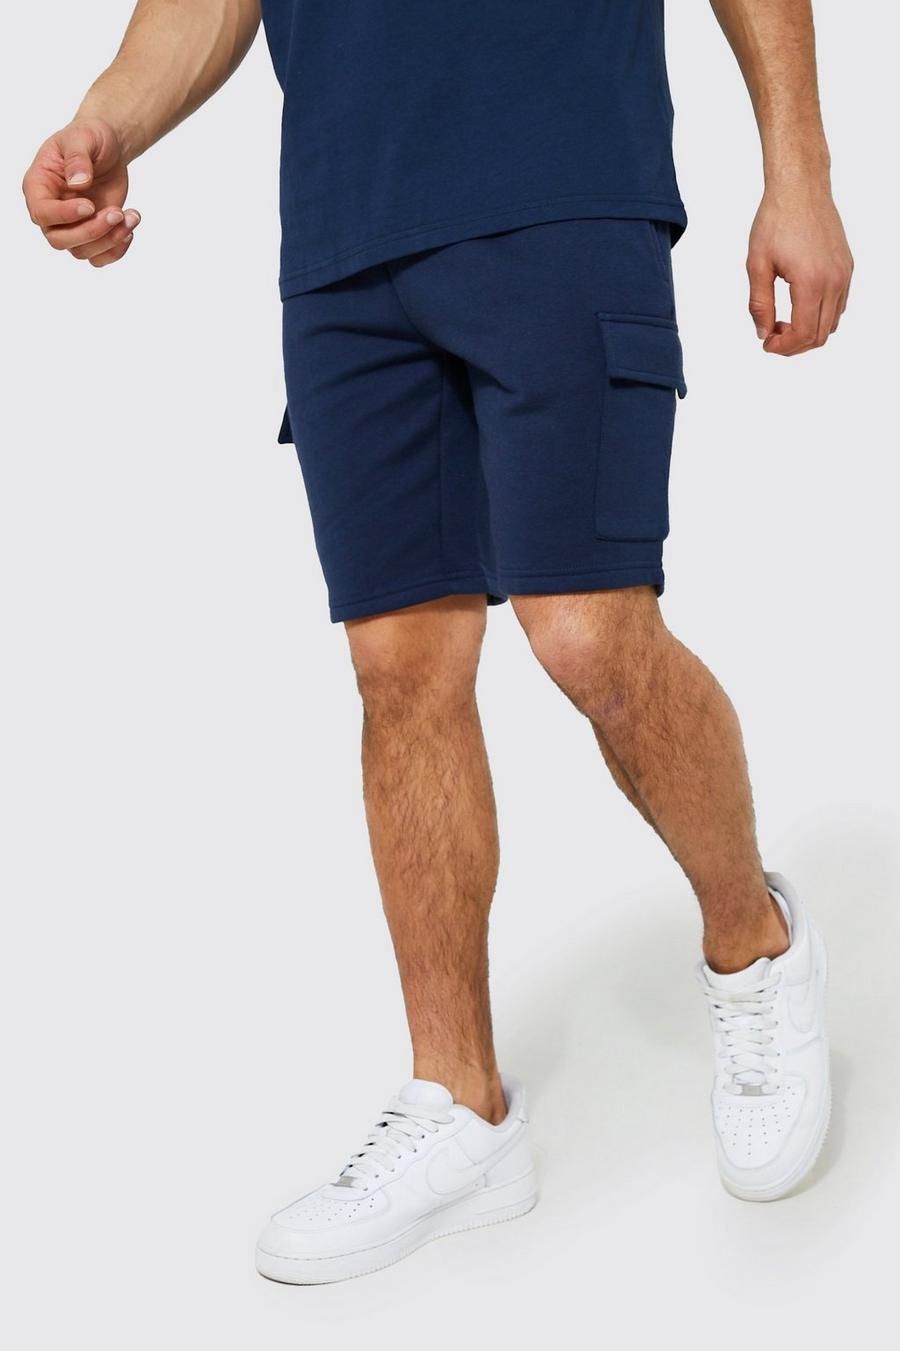 Pantalón corto cargo ajustado de tela jersey con algodón ecológico, Navy azul marino